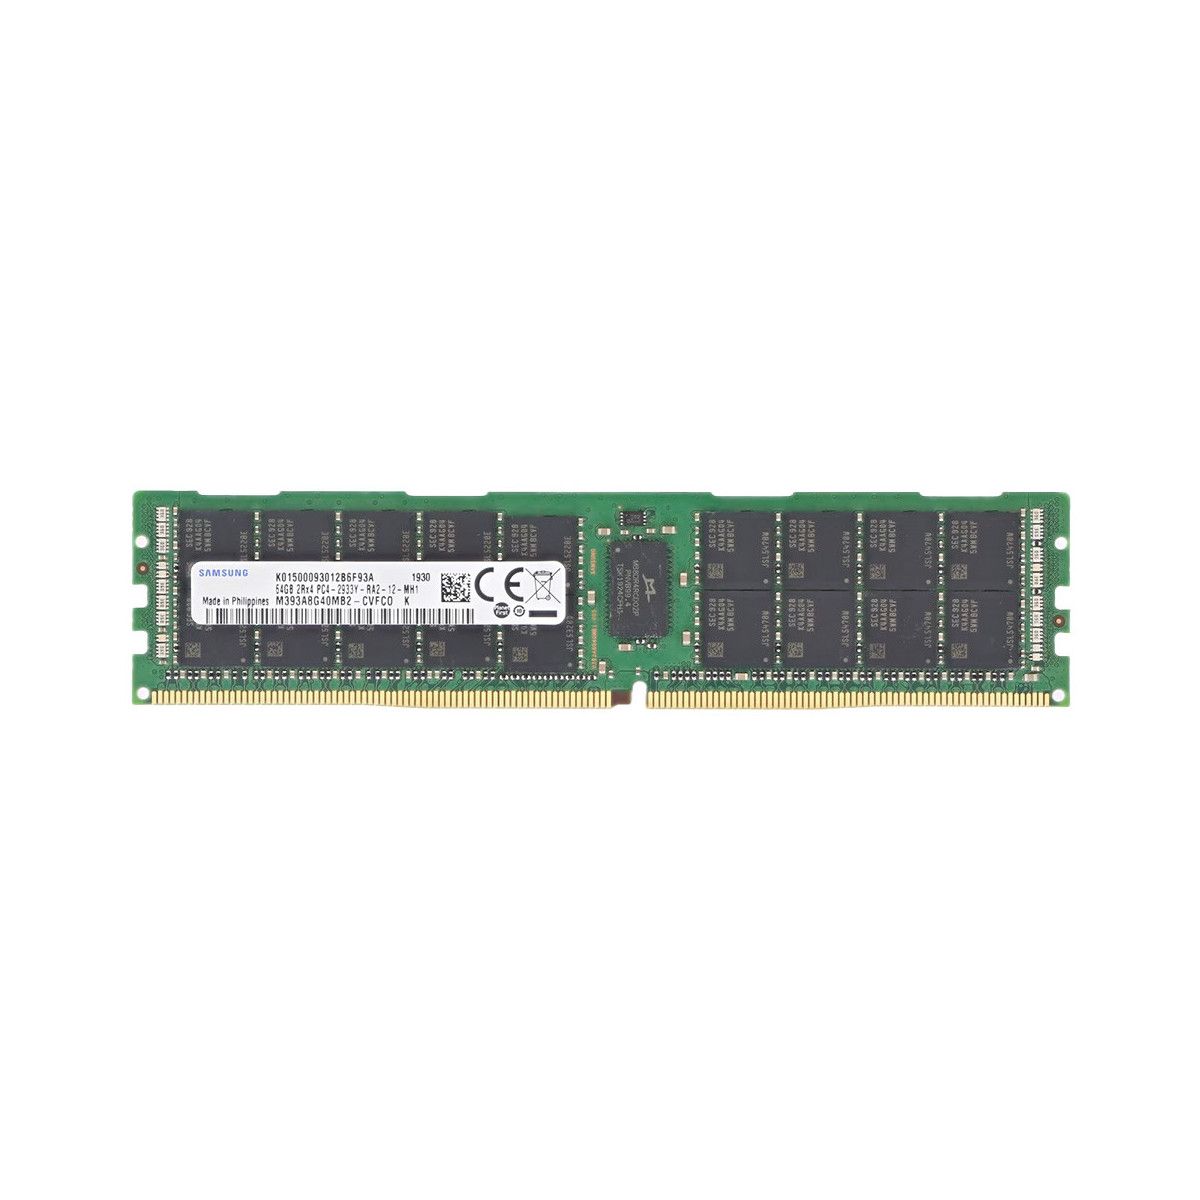 AA601615-MS - Memstar 1x 64GB DDR4-2933 RDIMM PC4-23466U-R - Memorie OEM compatibilă cu Mem-Star 1 - Memstar 